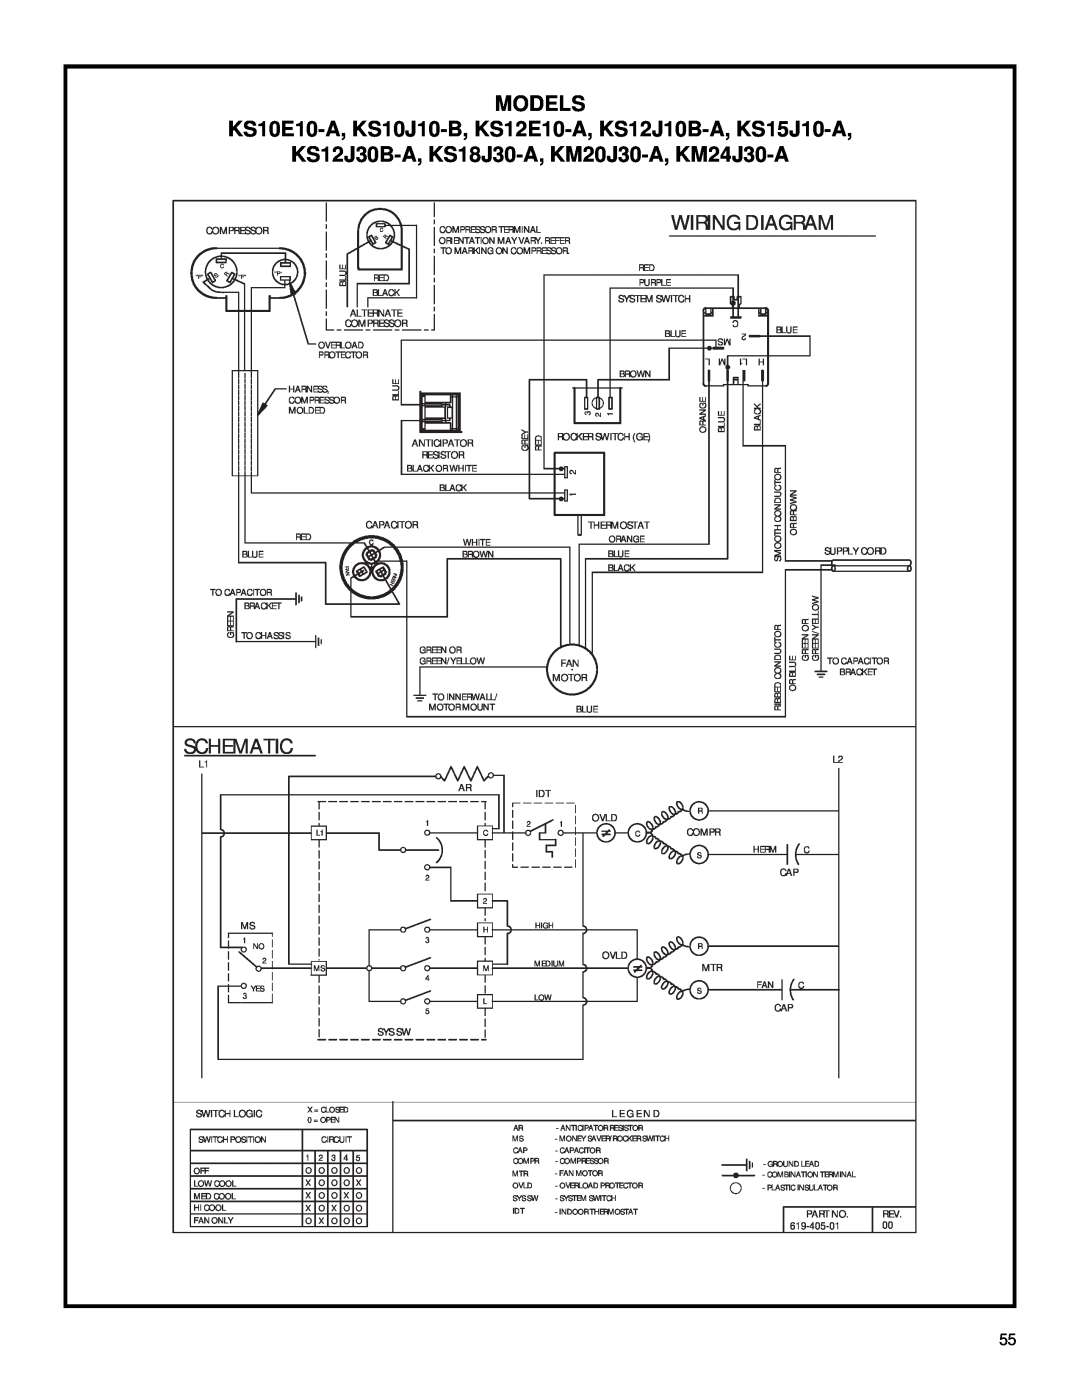 Friedrich 2003 service manual Schematic, Models, KS12J30B-A, KS18J30-A, KM20J30-A, KM24J30-A, Wiring Diagram 